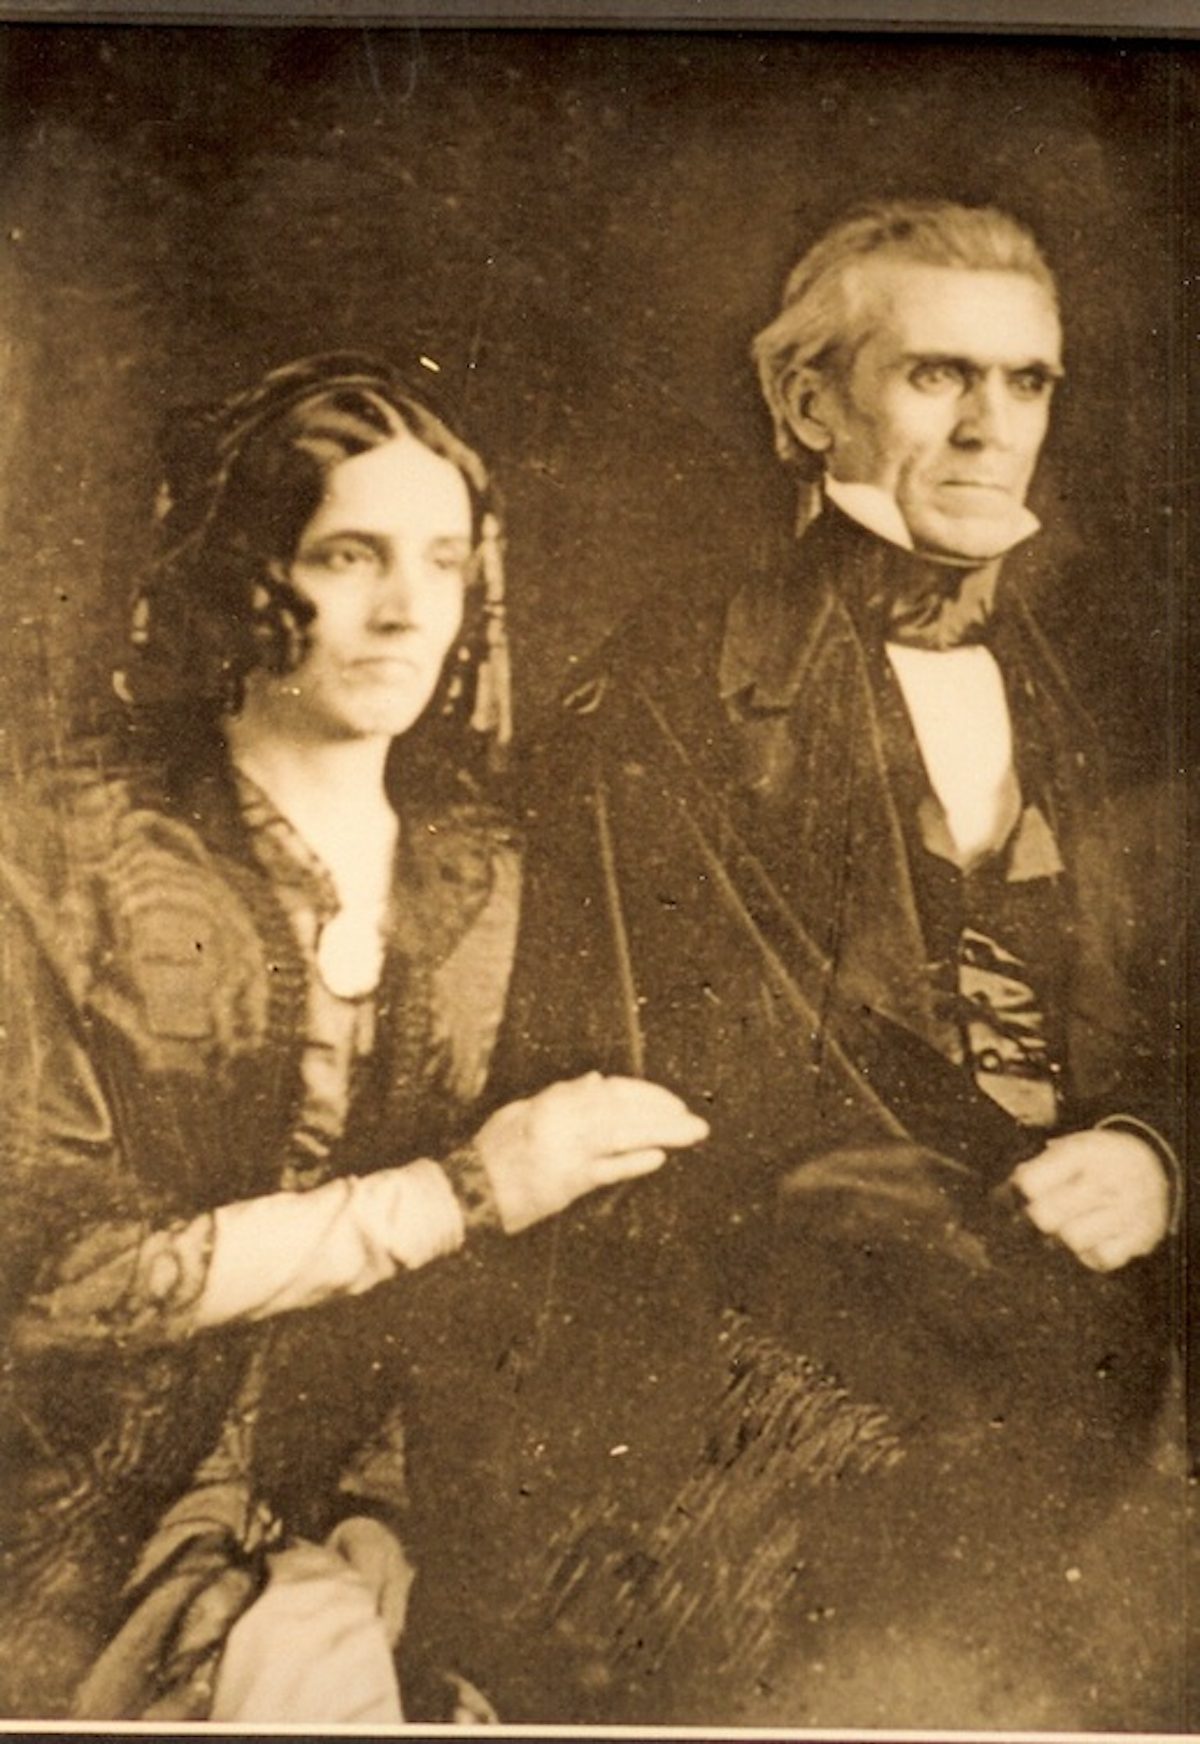 James and Sarah Polk, 1846